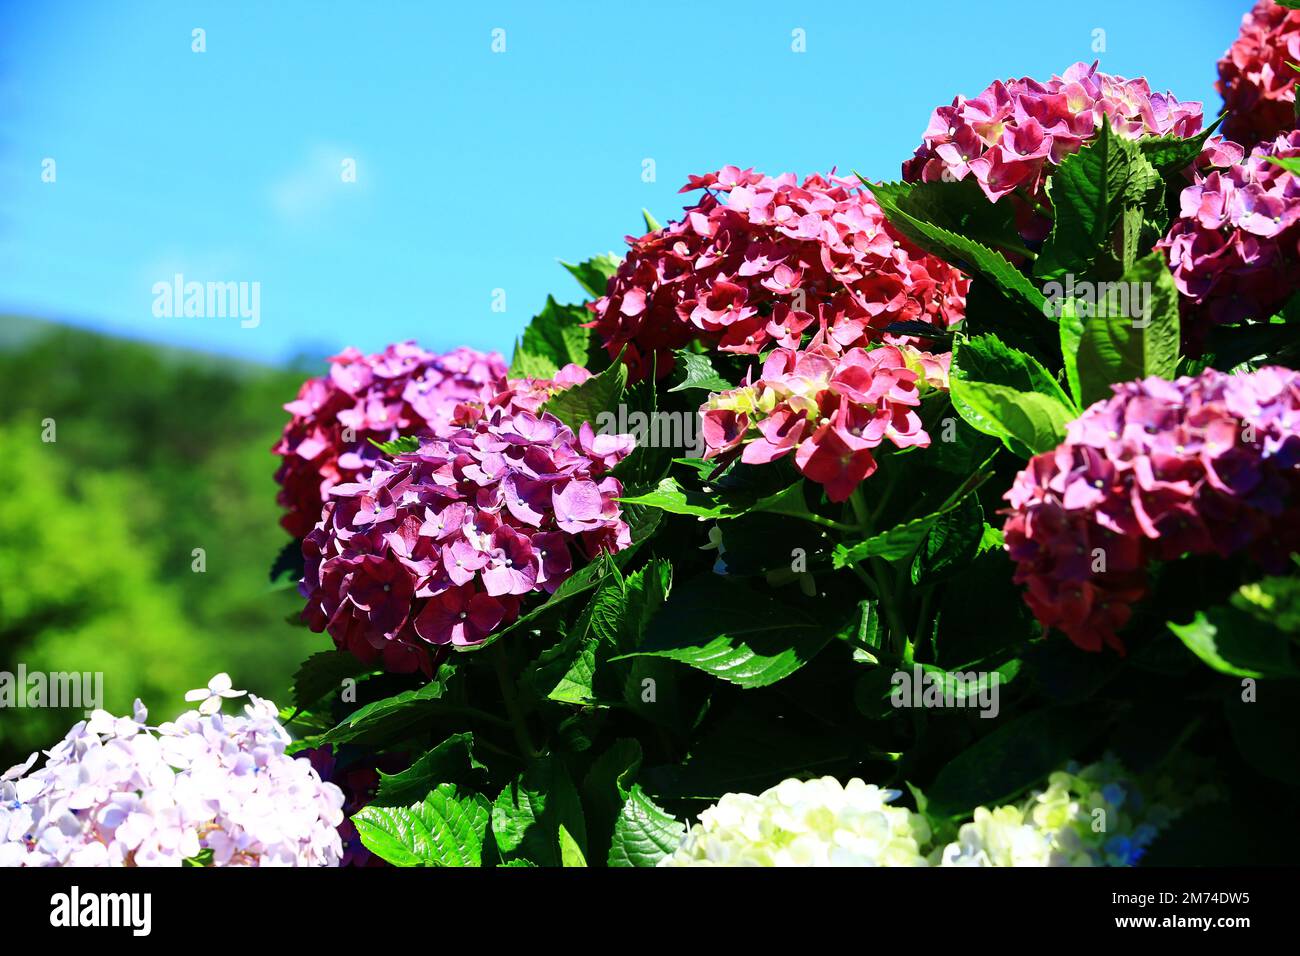 Hydrangea fioritura, Big-leaf Hyrdangea fiori con sfondo blu cielo, primo piano di colorati fiori di Hydrangea fiorire nel giardino in una giornata di sole Foto Stock